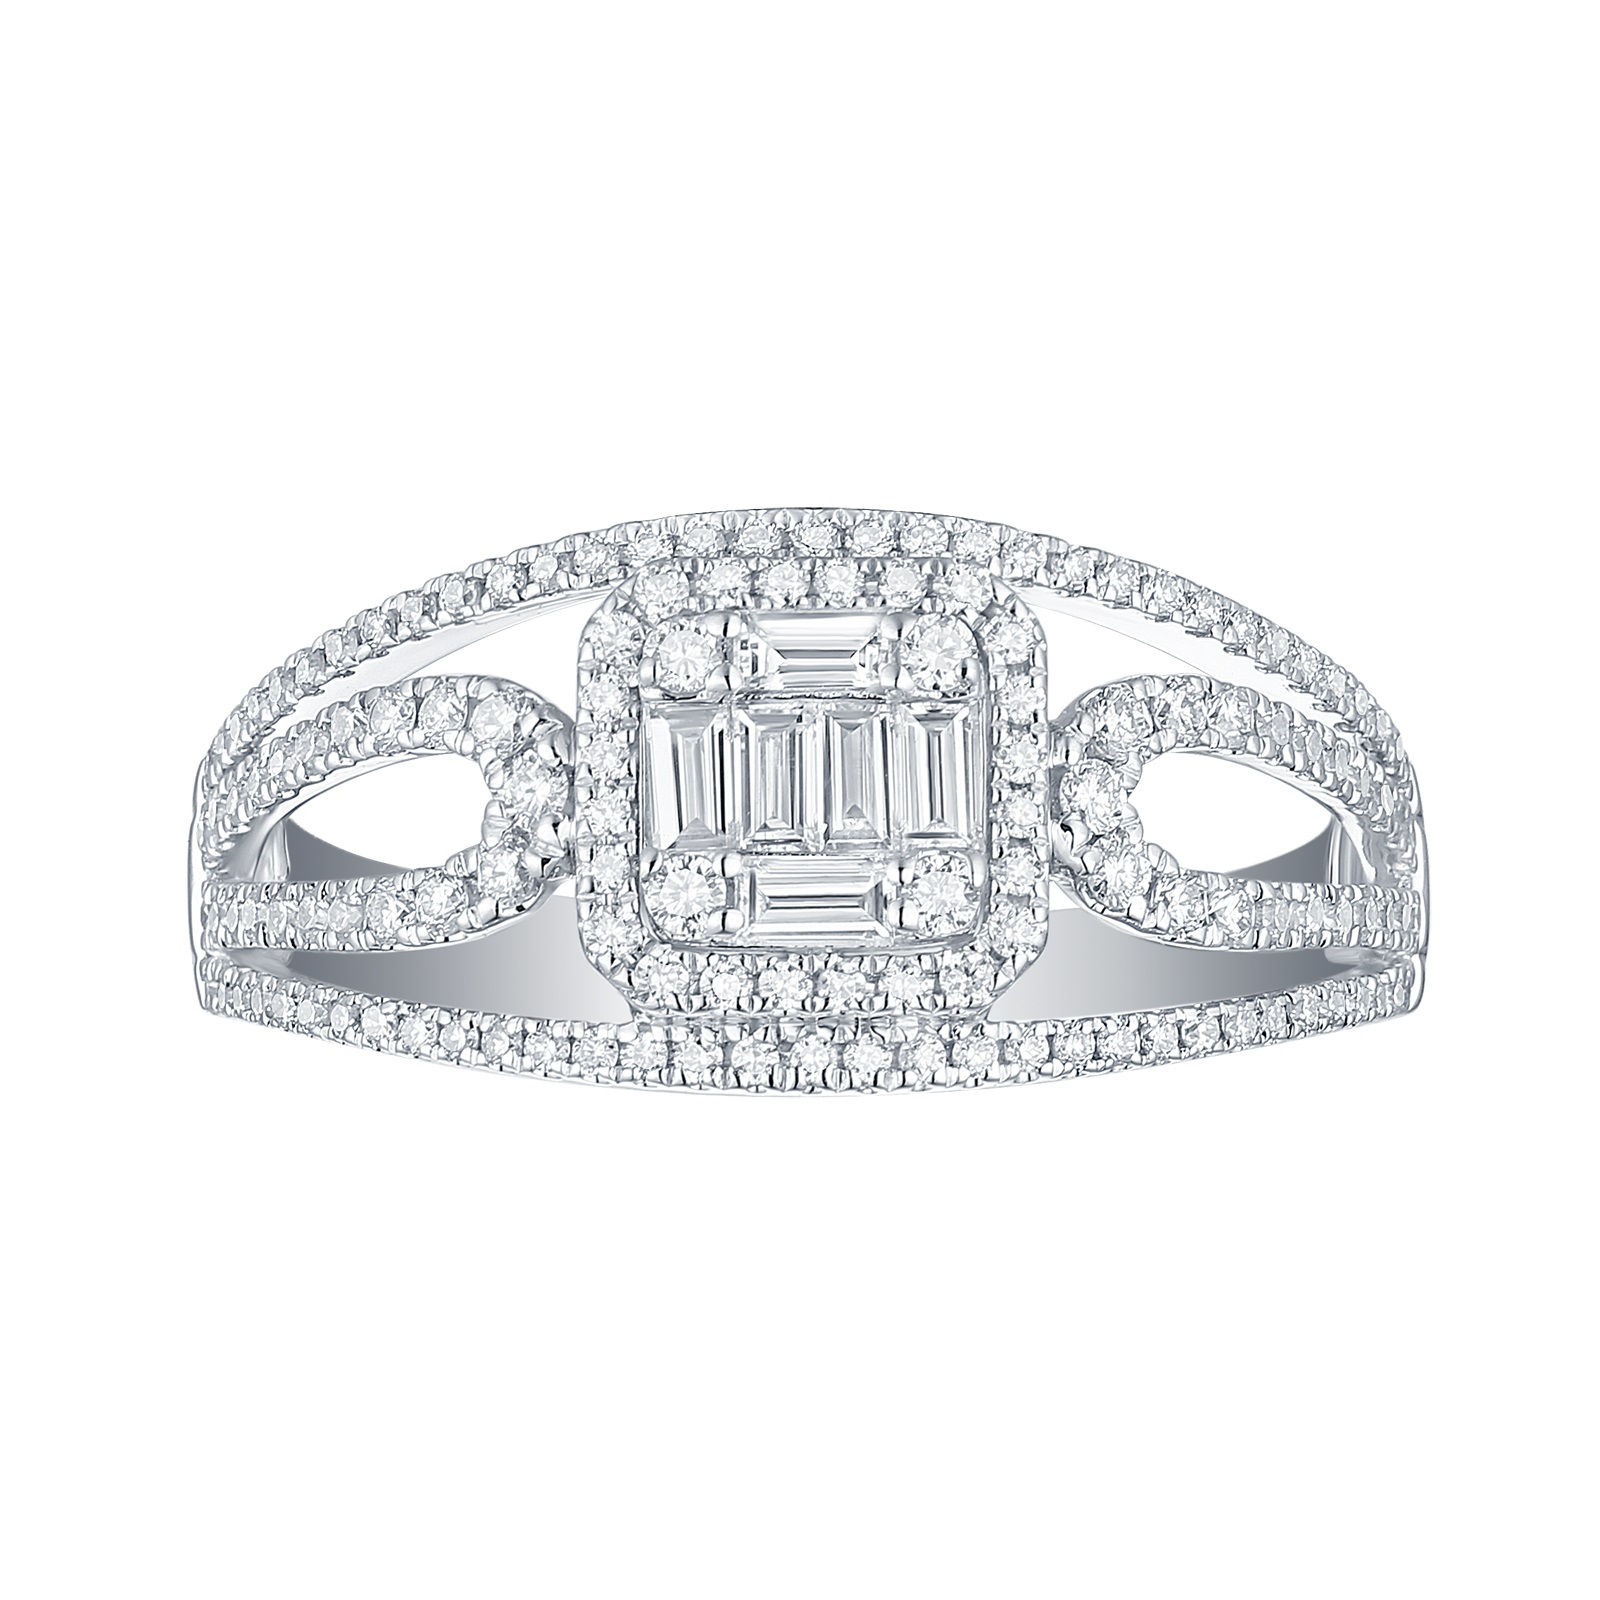 R34807WHT – 18K White Gold Diamond Ring, 0.56 TCW